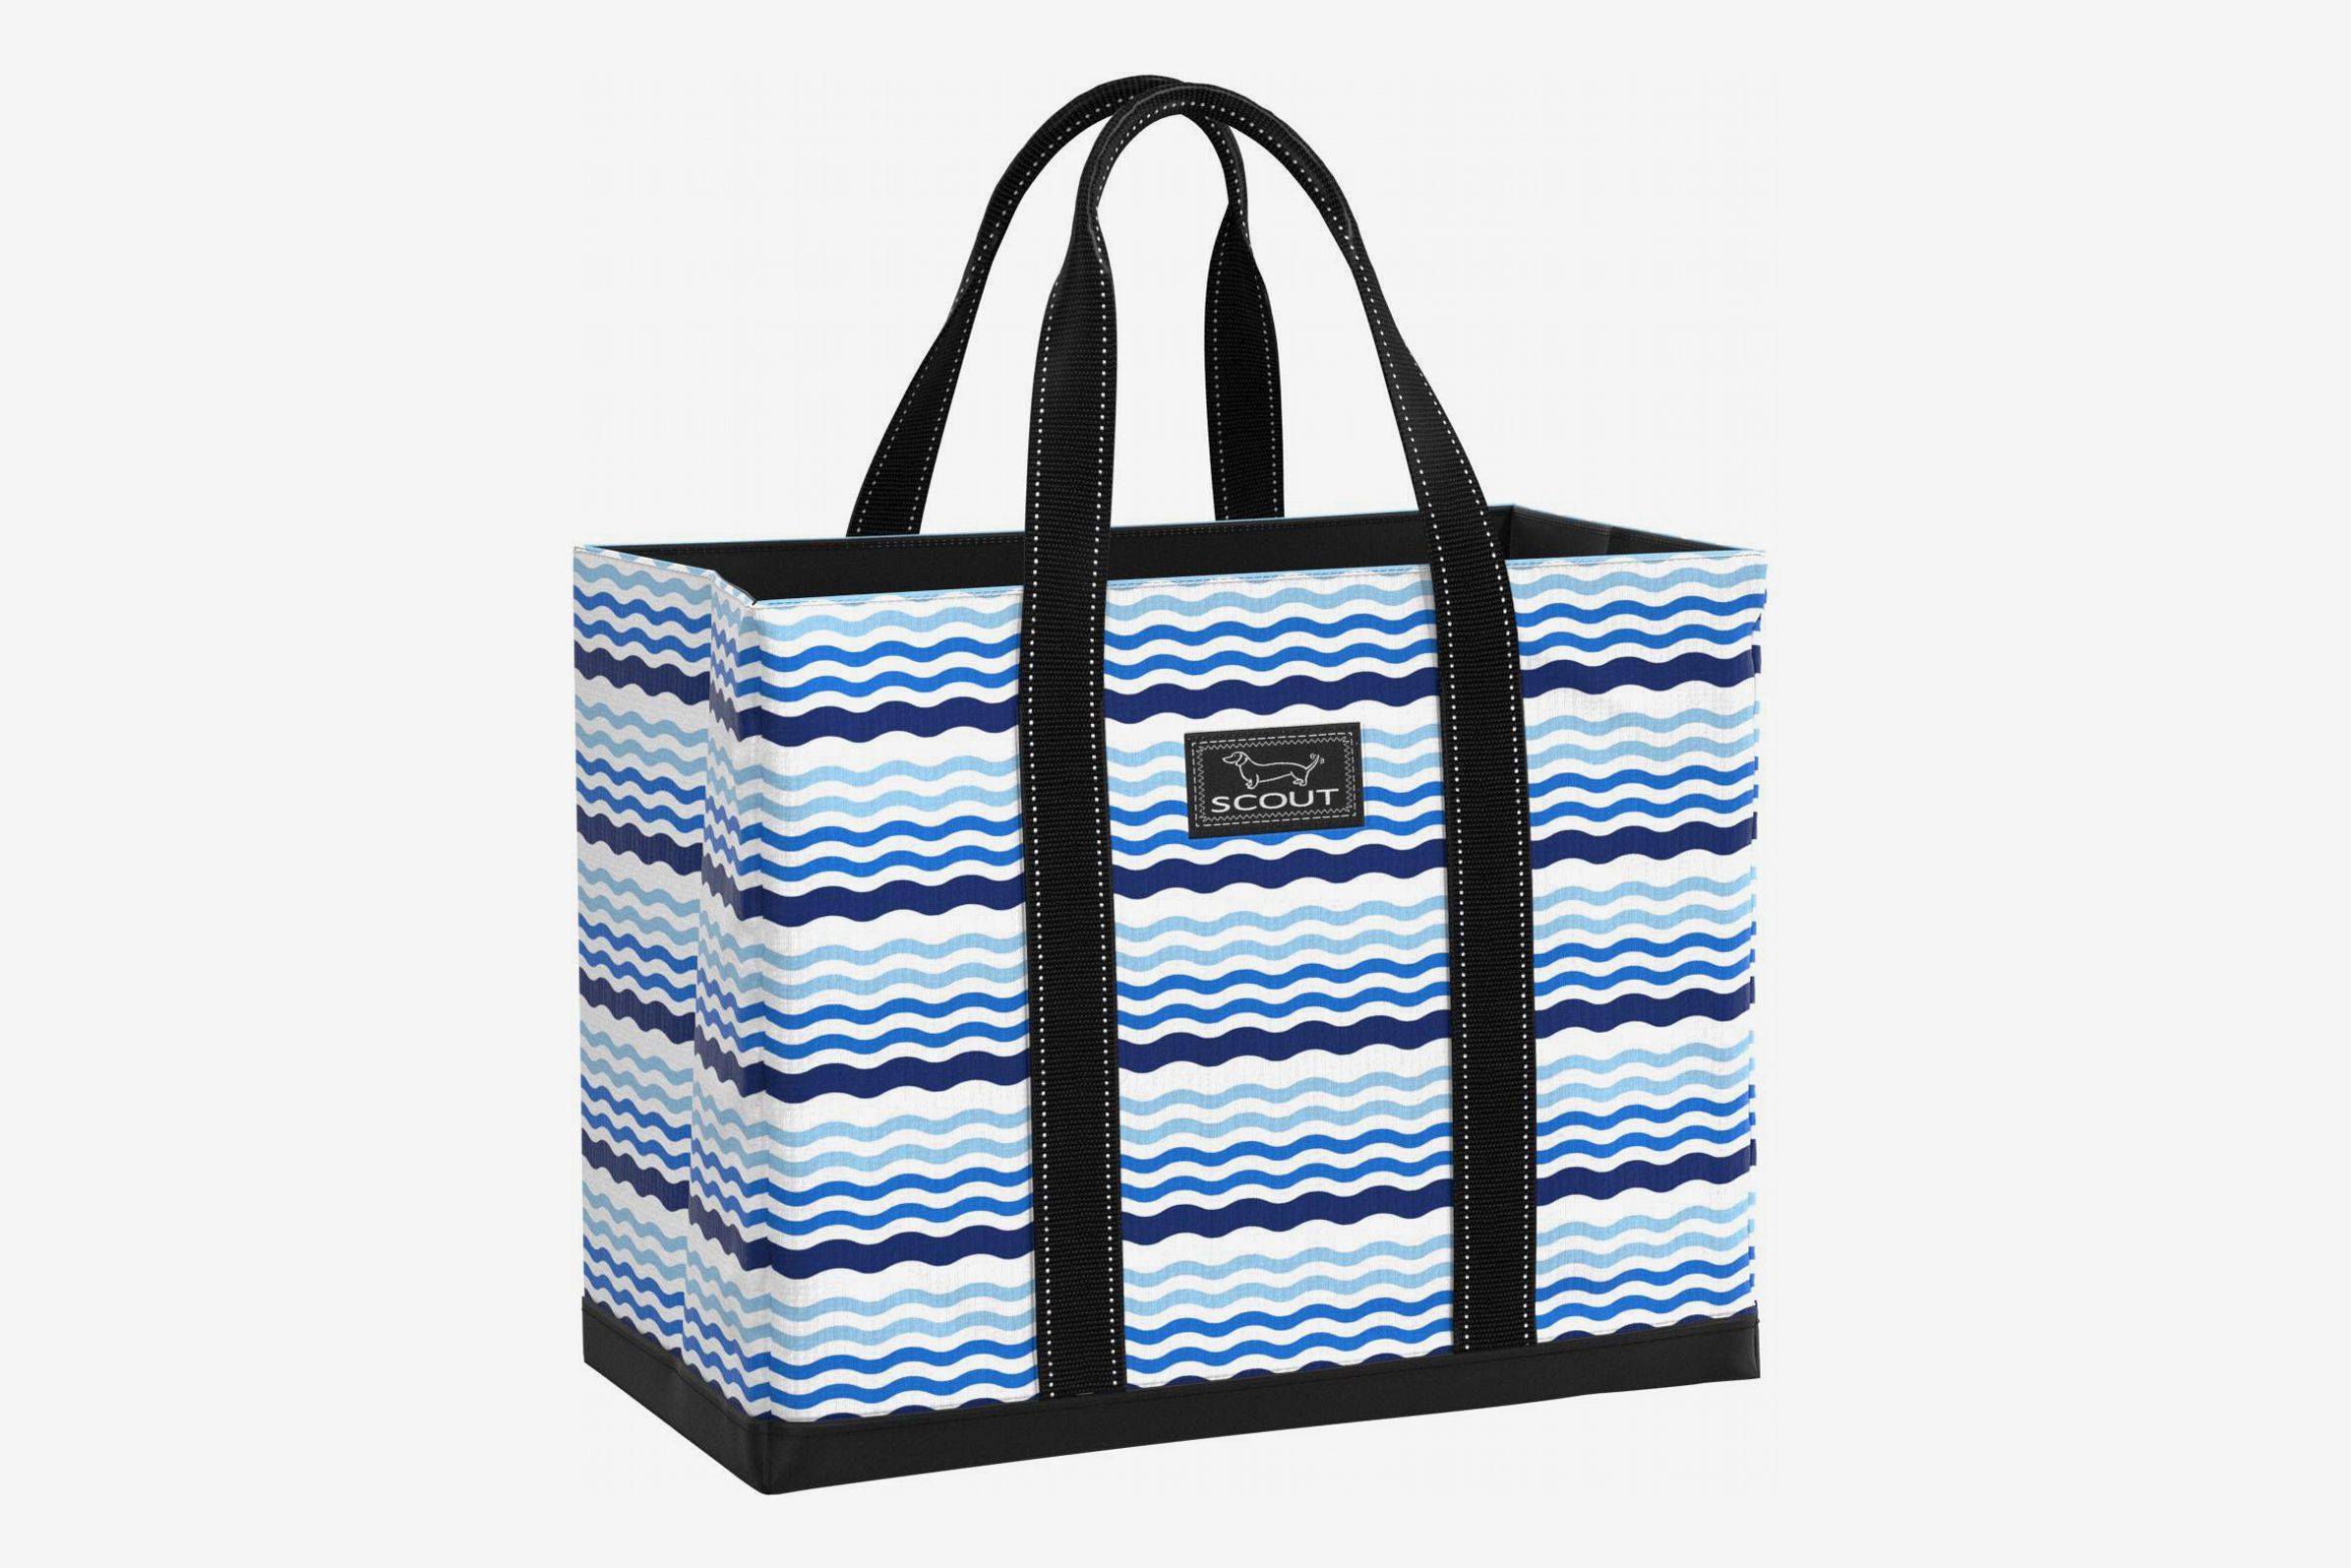 Tote Bag Pool bag Multipurpose bag Daily bag Shopper bag Travel bag and weekend beach and more